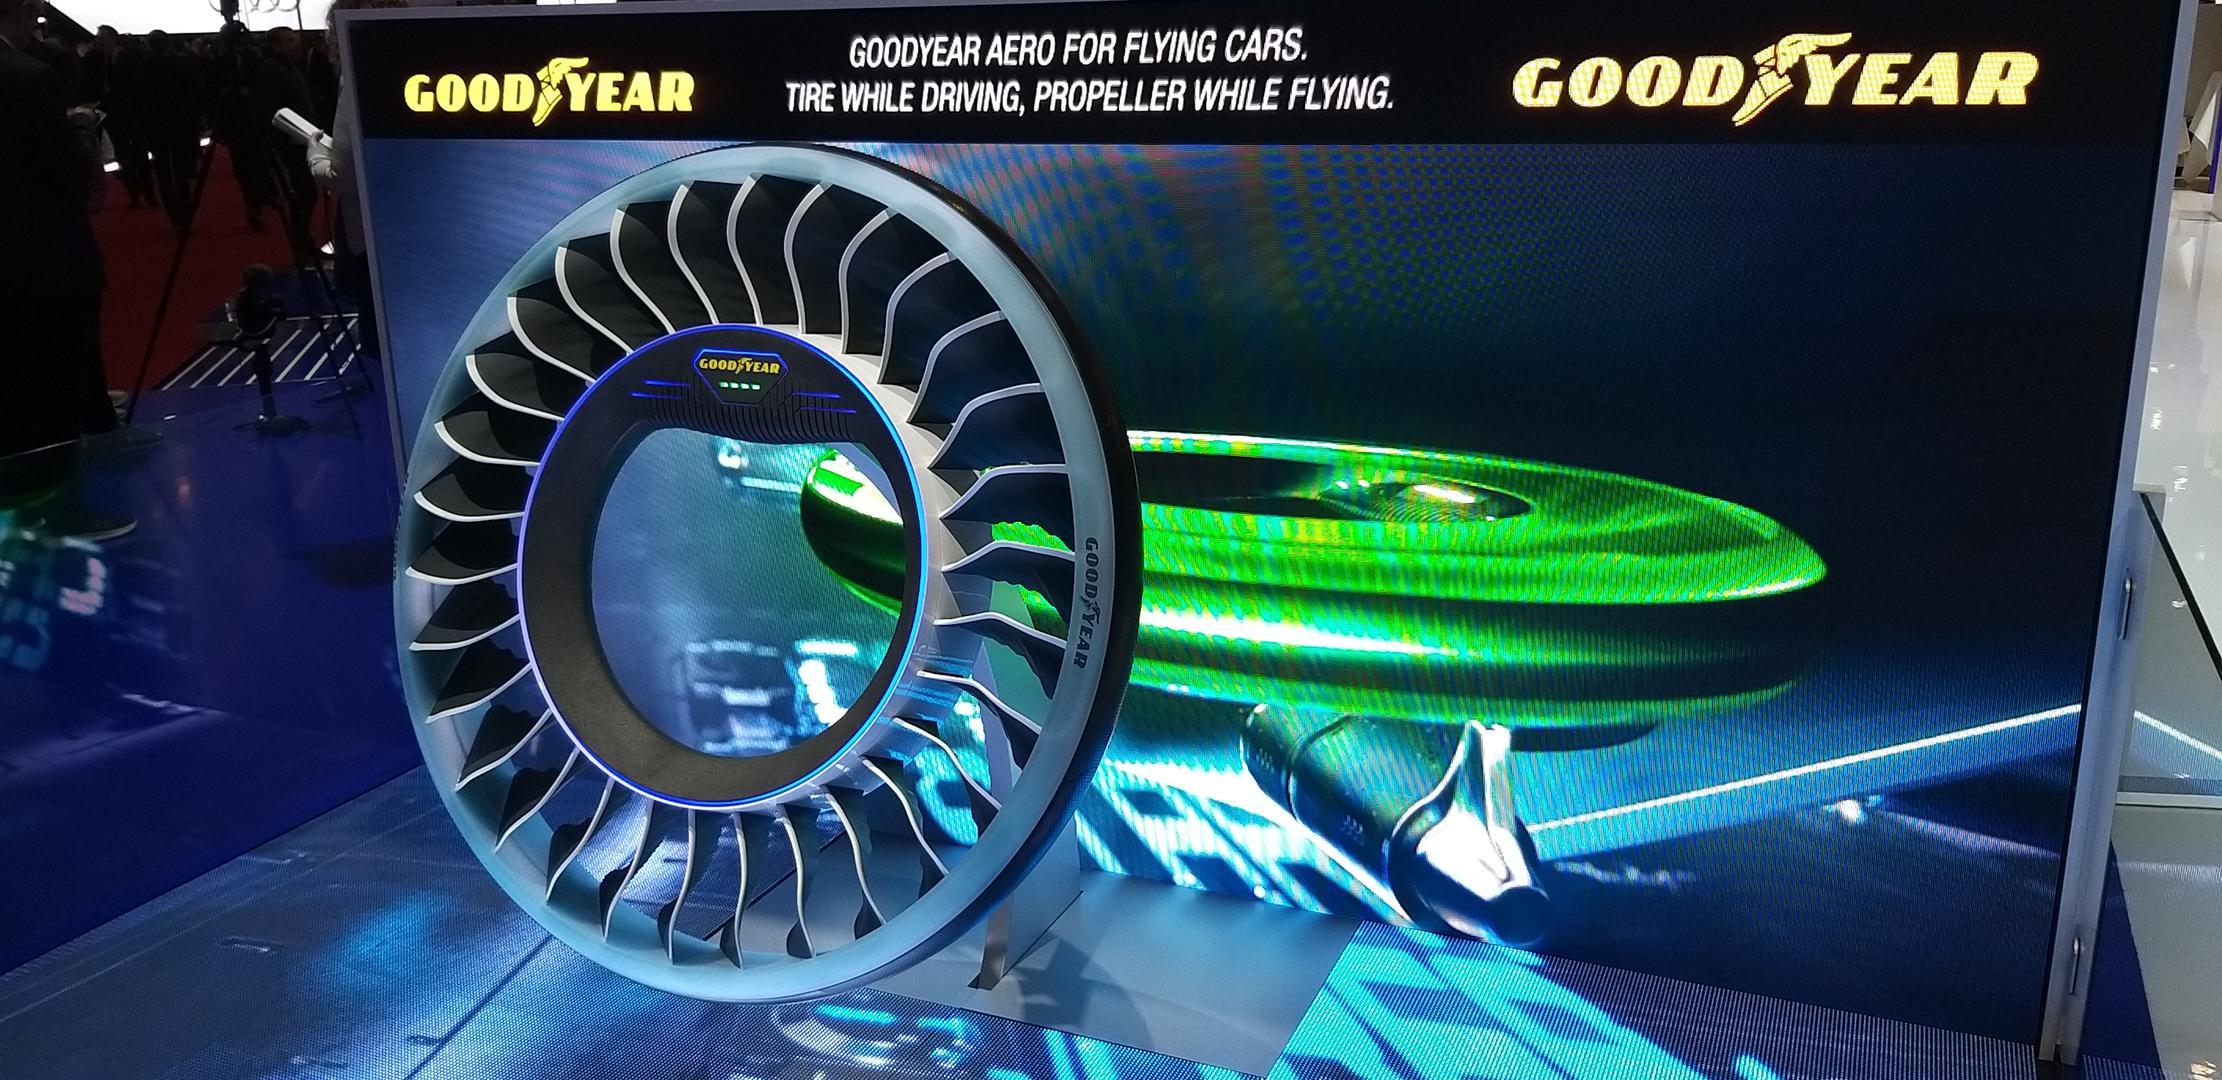 Goodyear Aero: Guma s propelerima za autonomna leteća vozila budućnosti , a služi
za vožnju cestom i letenje zrakom